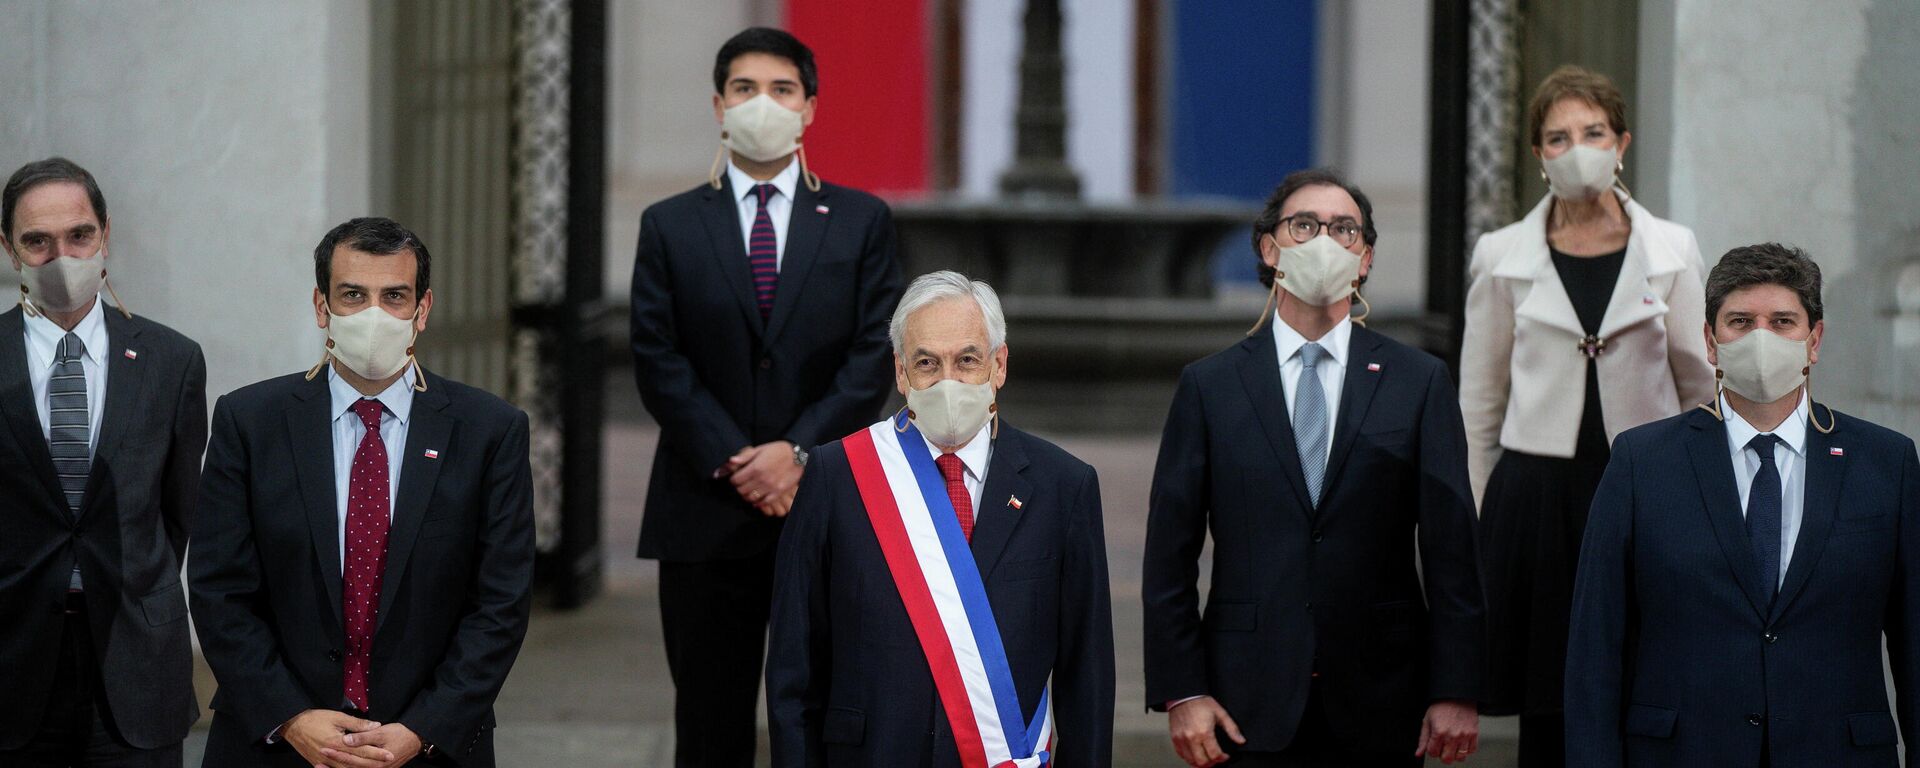 Sebastián Piñera, presidente de Chile, antes de su última cuenta pública, en Santiago, el 1 de junio del 2021 - Sputnik Mundo, 1920, 01.06.2021